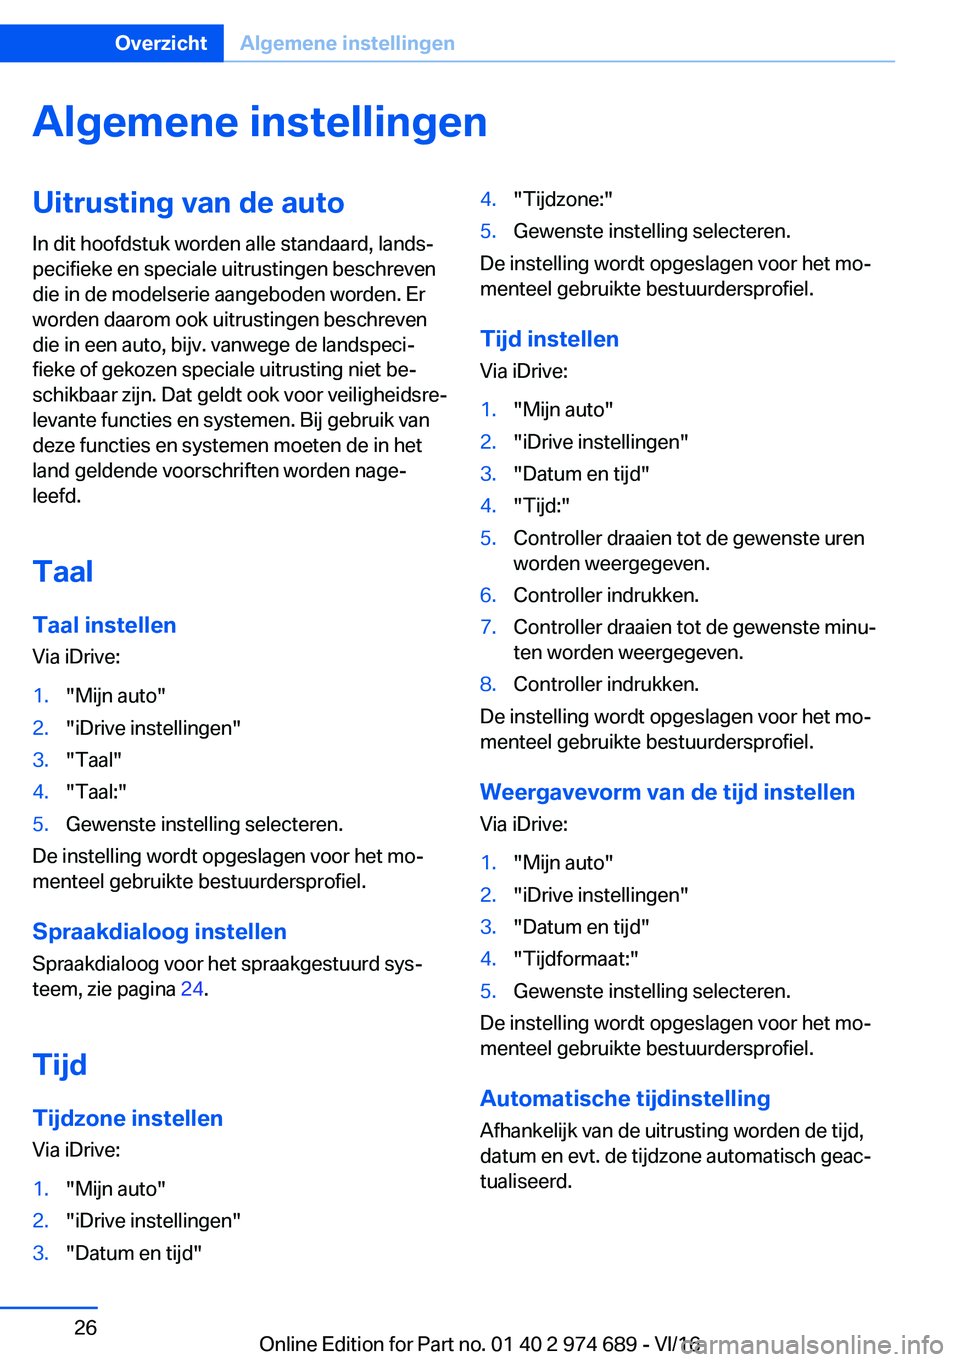 BMW M2 2017  Instructieboekjes (in Dutch) �A�l�g�e�m�e�n�e��i�n�s�t�e�l�l�i�n�g�e�n�U�i�t�r�u�s�t�i�n�g��v�a�n��d�e��a�u�t�o
�I�n� �d�i�t� �h�o�o�f�d�s�t�u�k� �w�o�r�d�e�n� �a�l�l�e� �s�t�a�n�d�a�a�r�d�,� �l�a�n�d�sj
�p�e�c�i�f�i�e�k�e� 